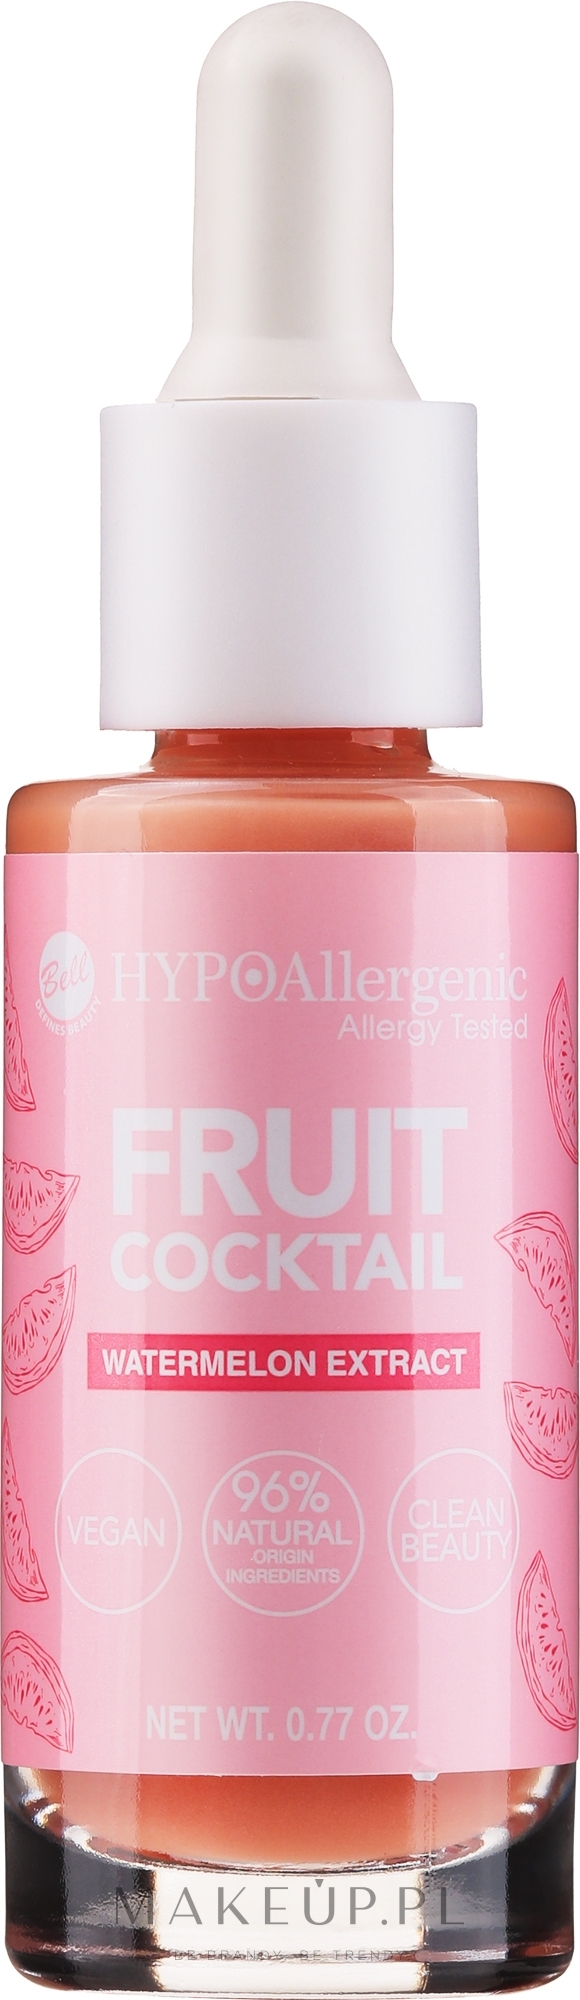 Hipoalergiczna baza pod makijaż - Bell Hypoallergenic Fruit Cocktail — Zdjęcie 22 g